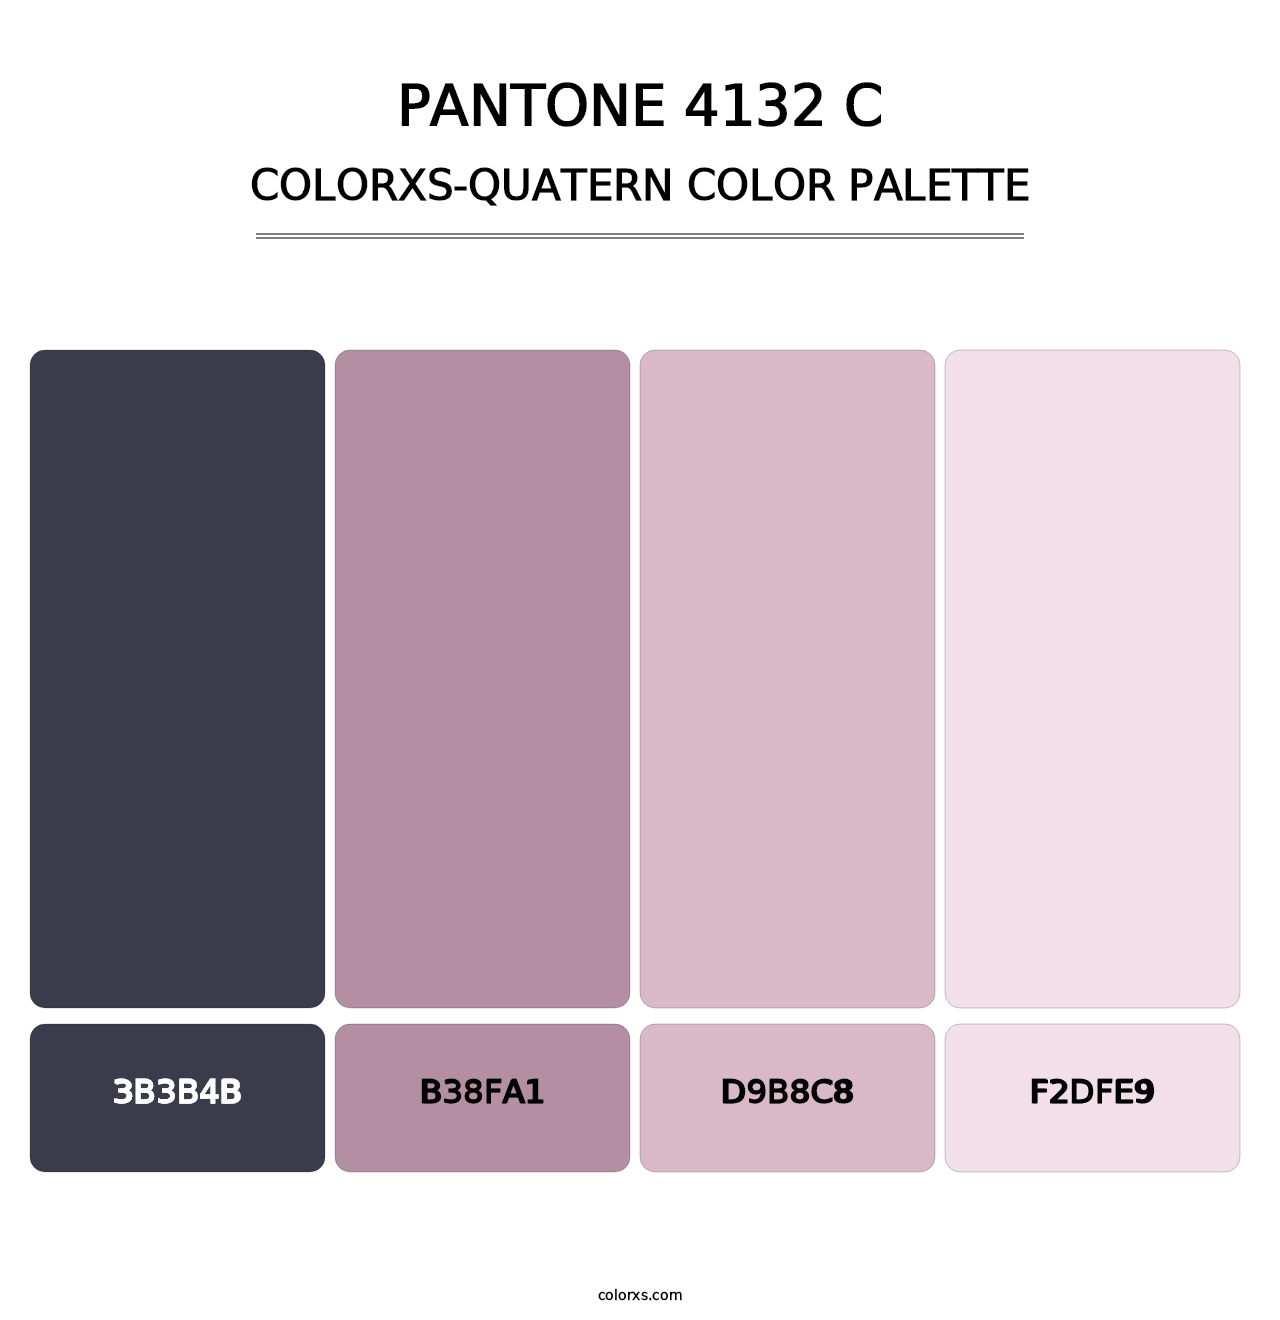 PANTONE 4132 C - Colorxs Quatern Palette